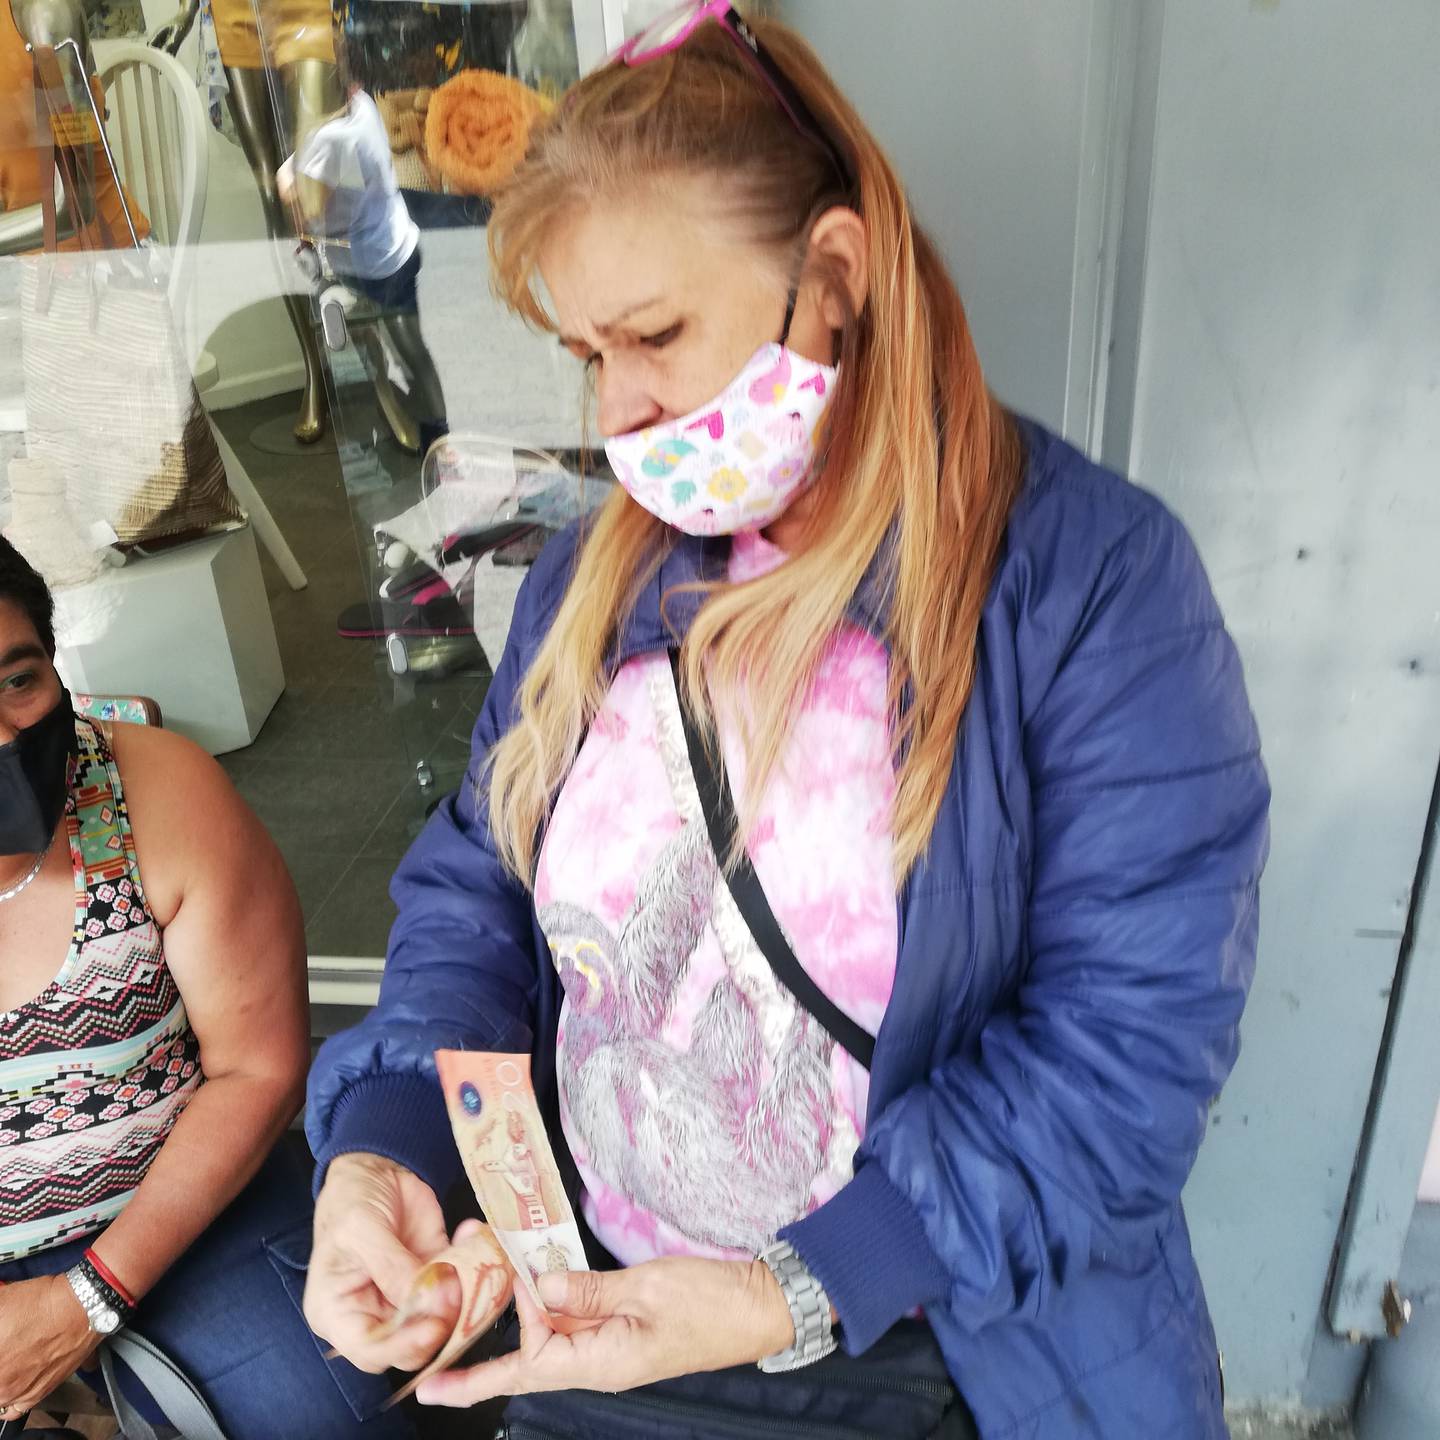 El billete de 20 córdobas de Nicaragua es gemelo del billete de 20 mil colones tico, lo que pasa es que el nicaragüense equivale a 500 colones ticos y están metiéndoselo a comercios y abuelitos. En la foto doña Cristina Ulla, vendedora de lotería.